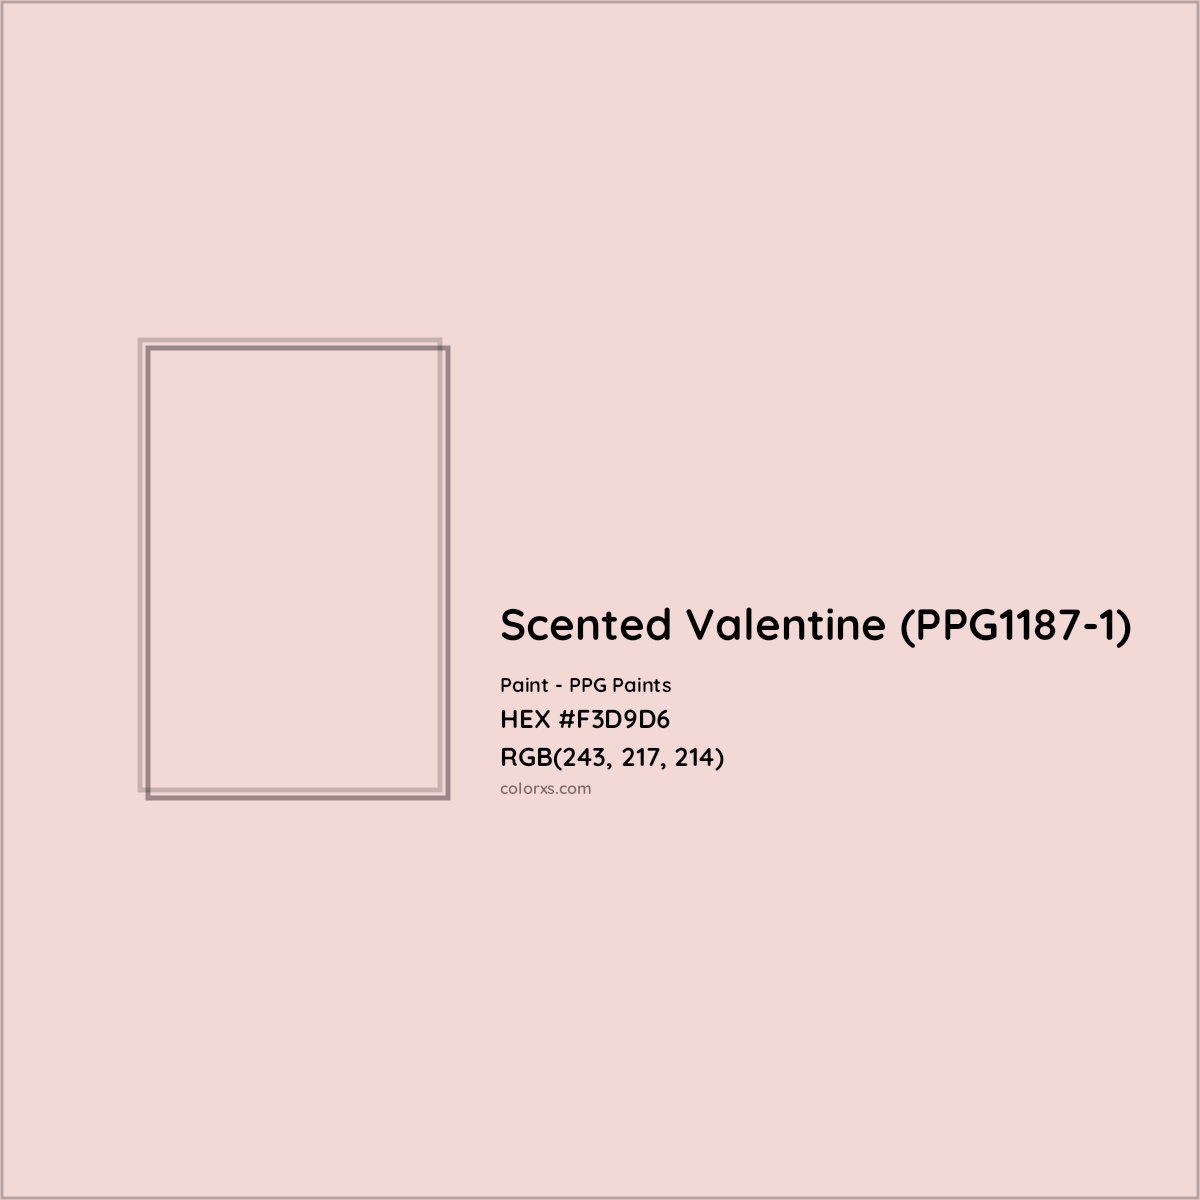 HEX #F3D9D6 Scented Valentine (PPG1187-1) Paint PPG Paints - Color Code